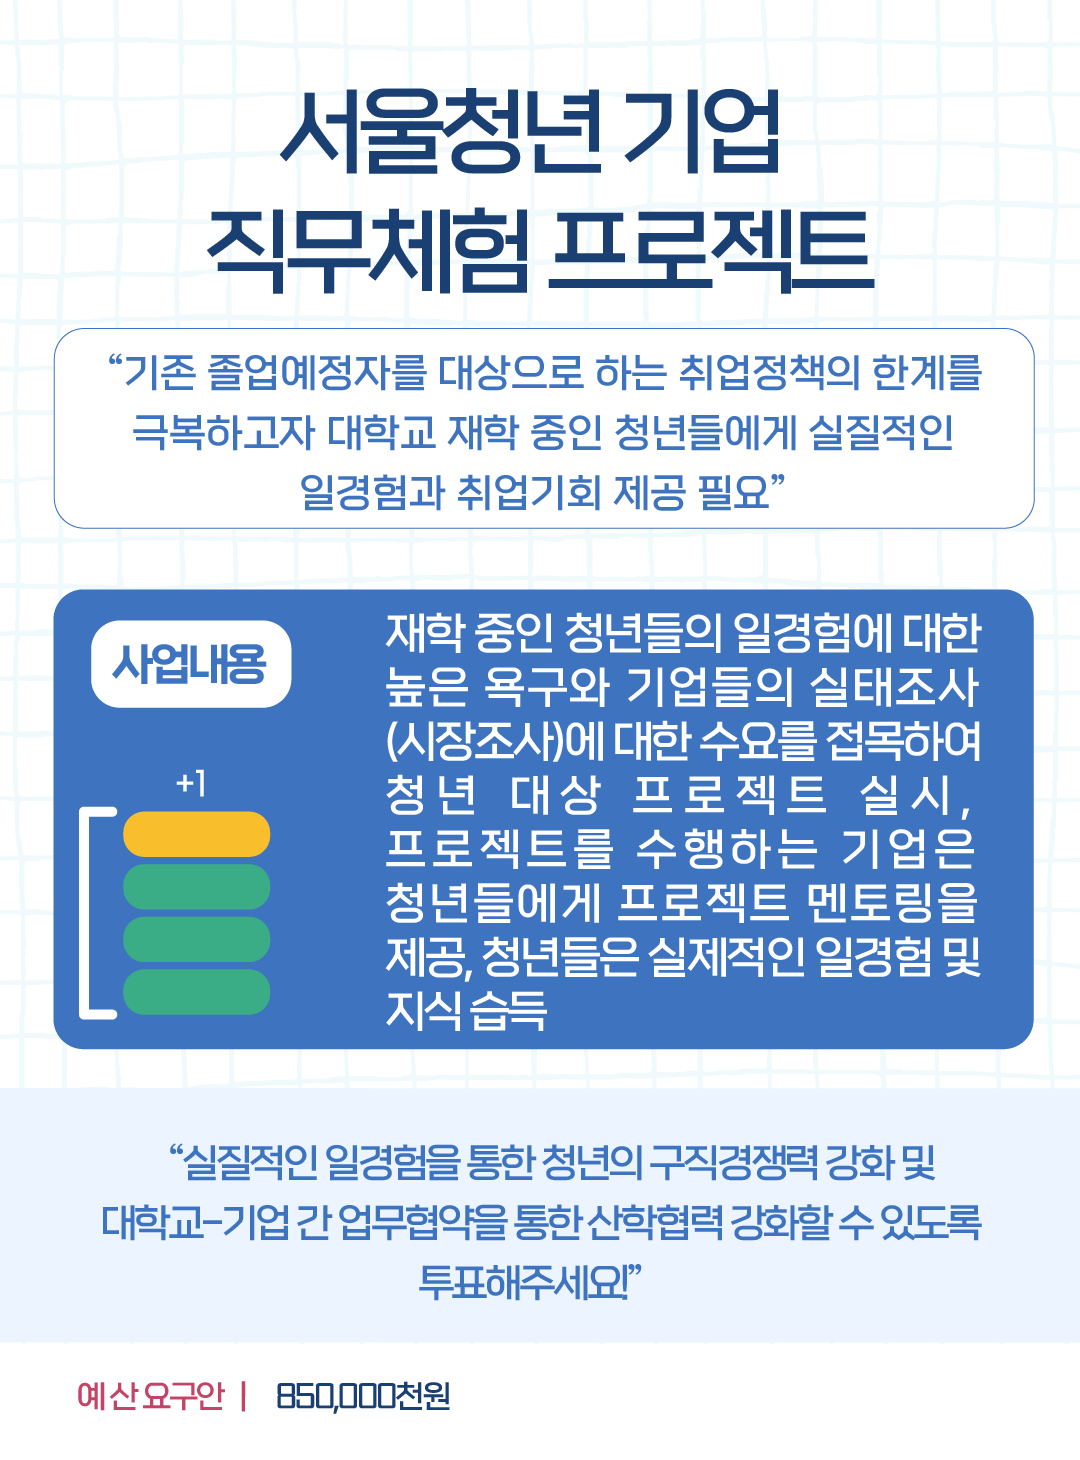 서울청년 기업 직무체험 프로젝트